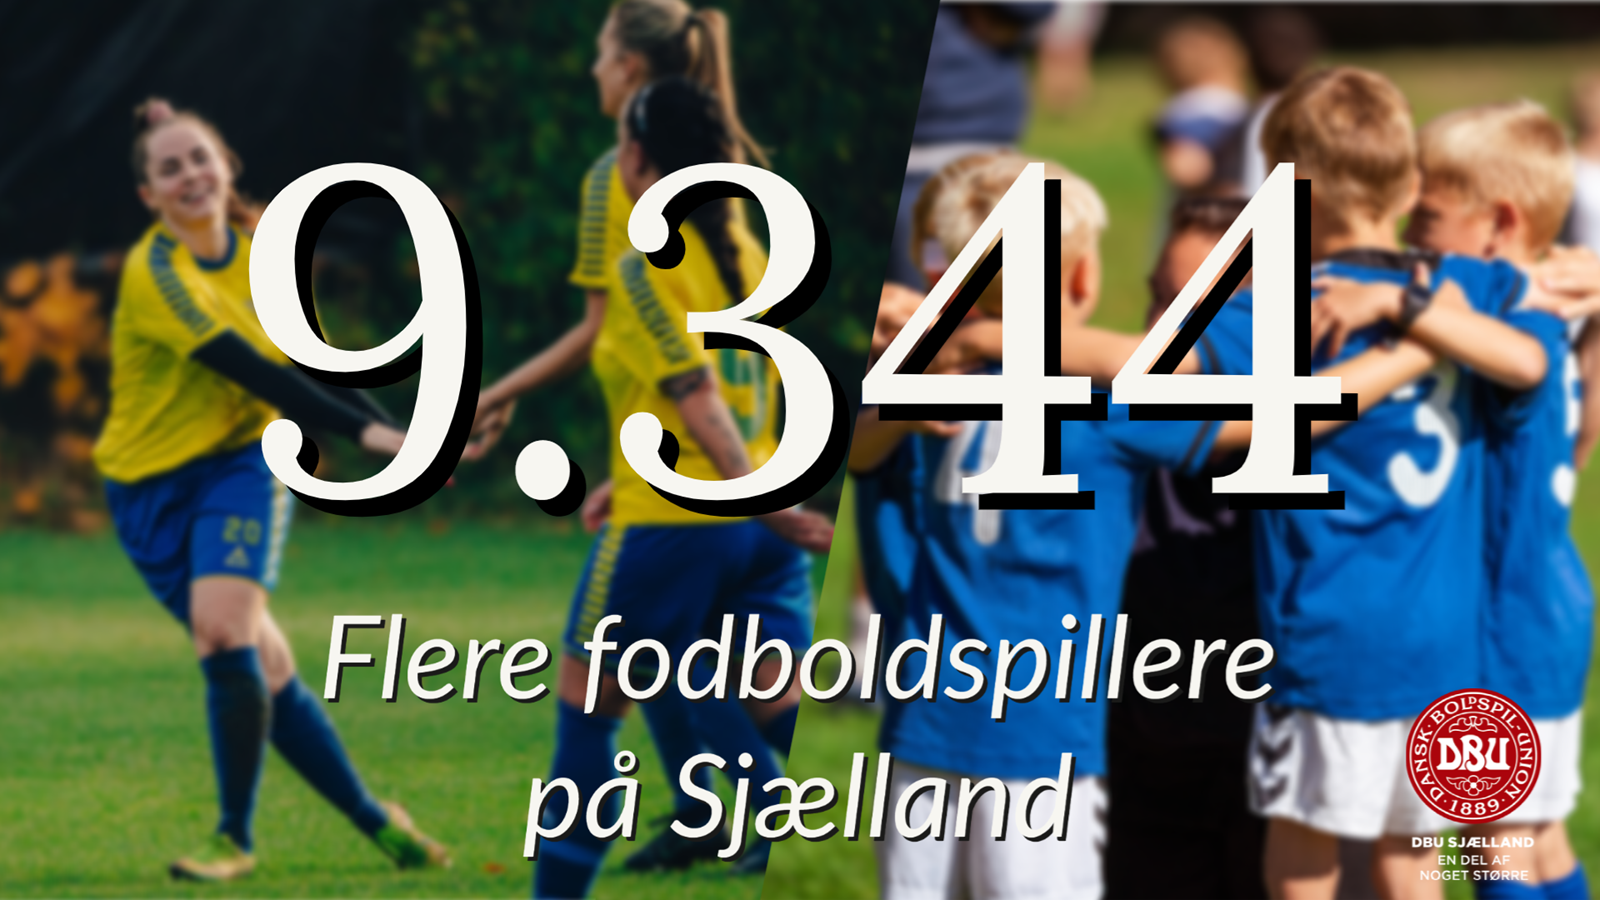 9.344 flere fodboldspillere på Sjælland